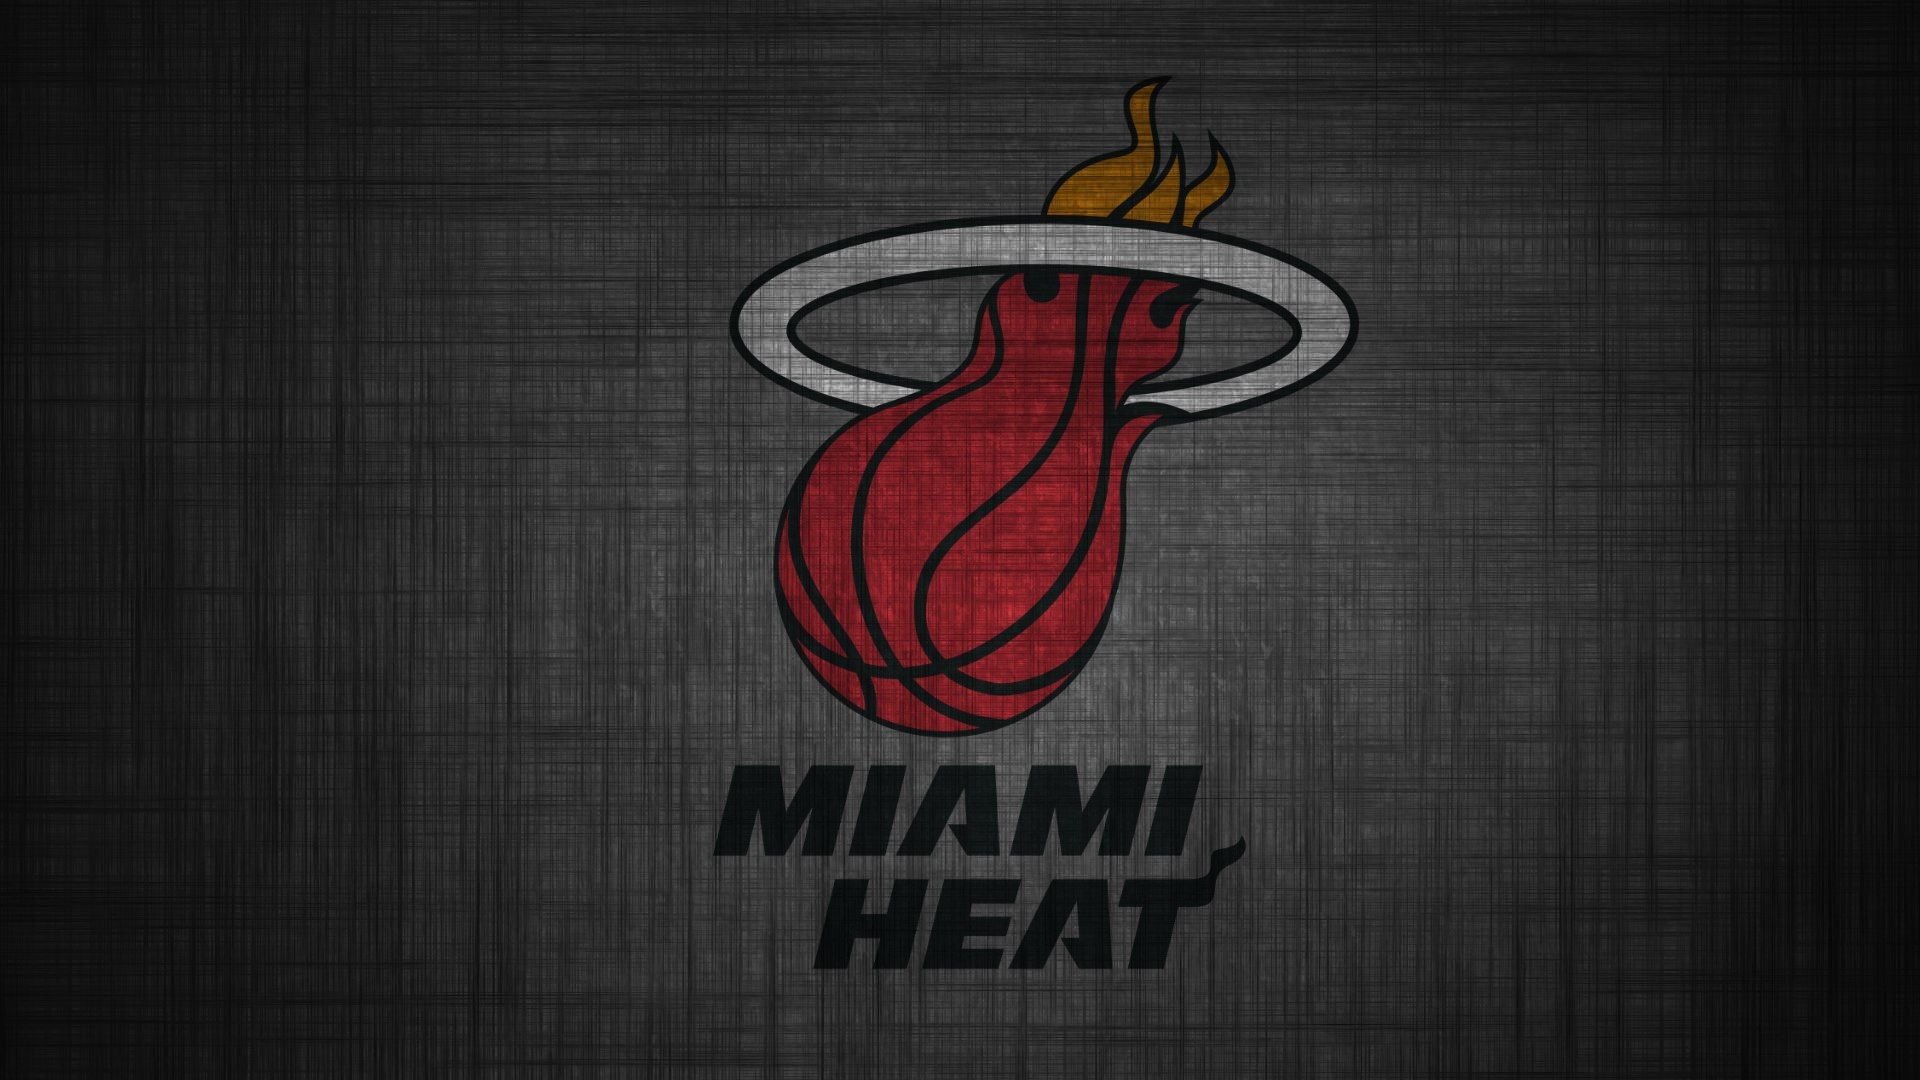 Download Miami Heat Schedule Wallpaper